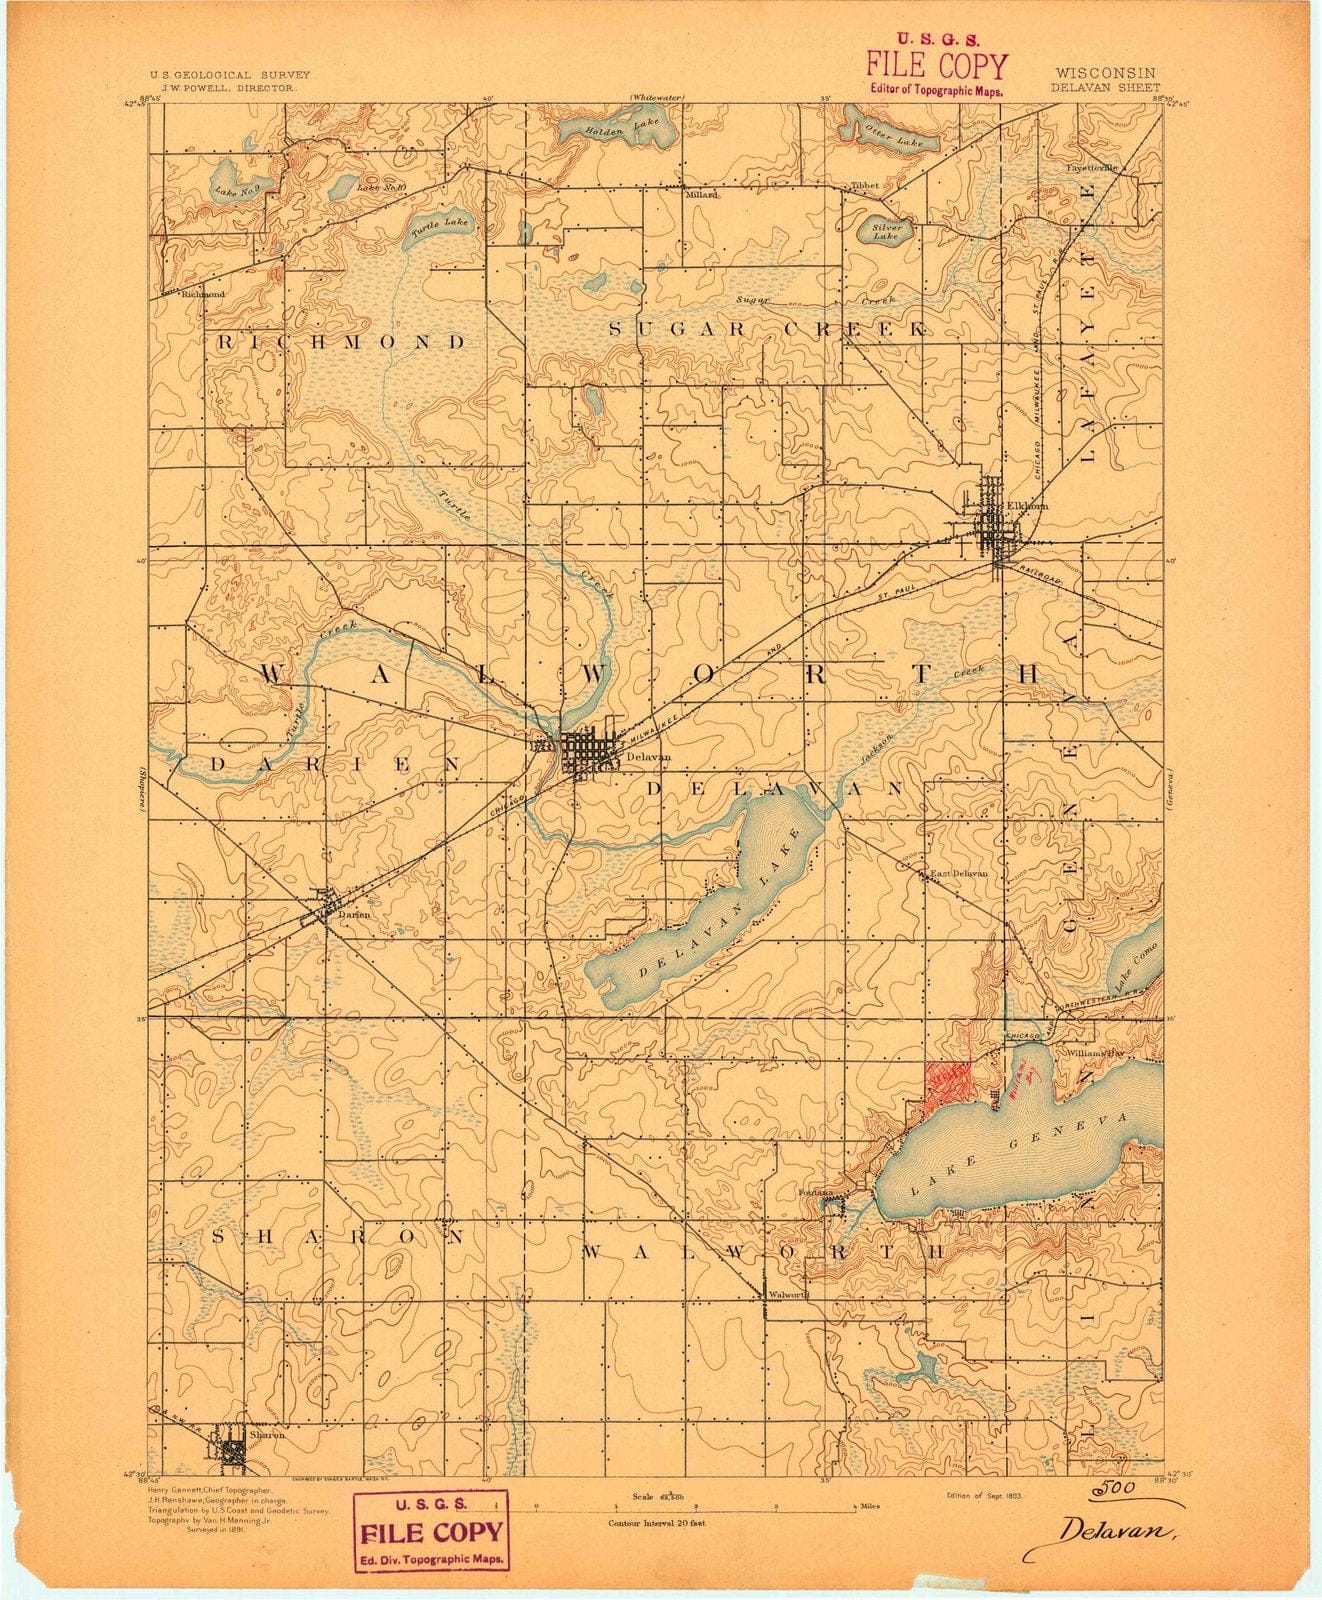 1893 Delavan, WI - Wisconsin - USGS Topographic Map